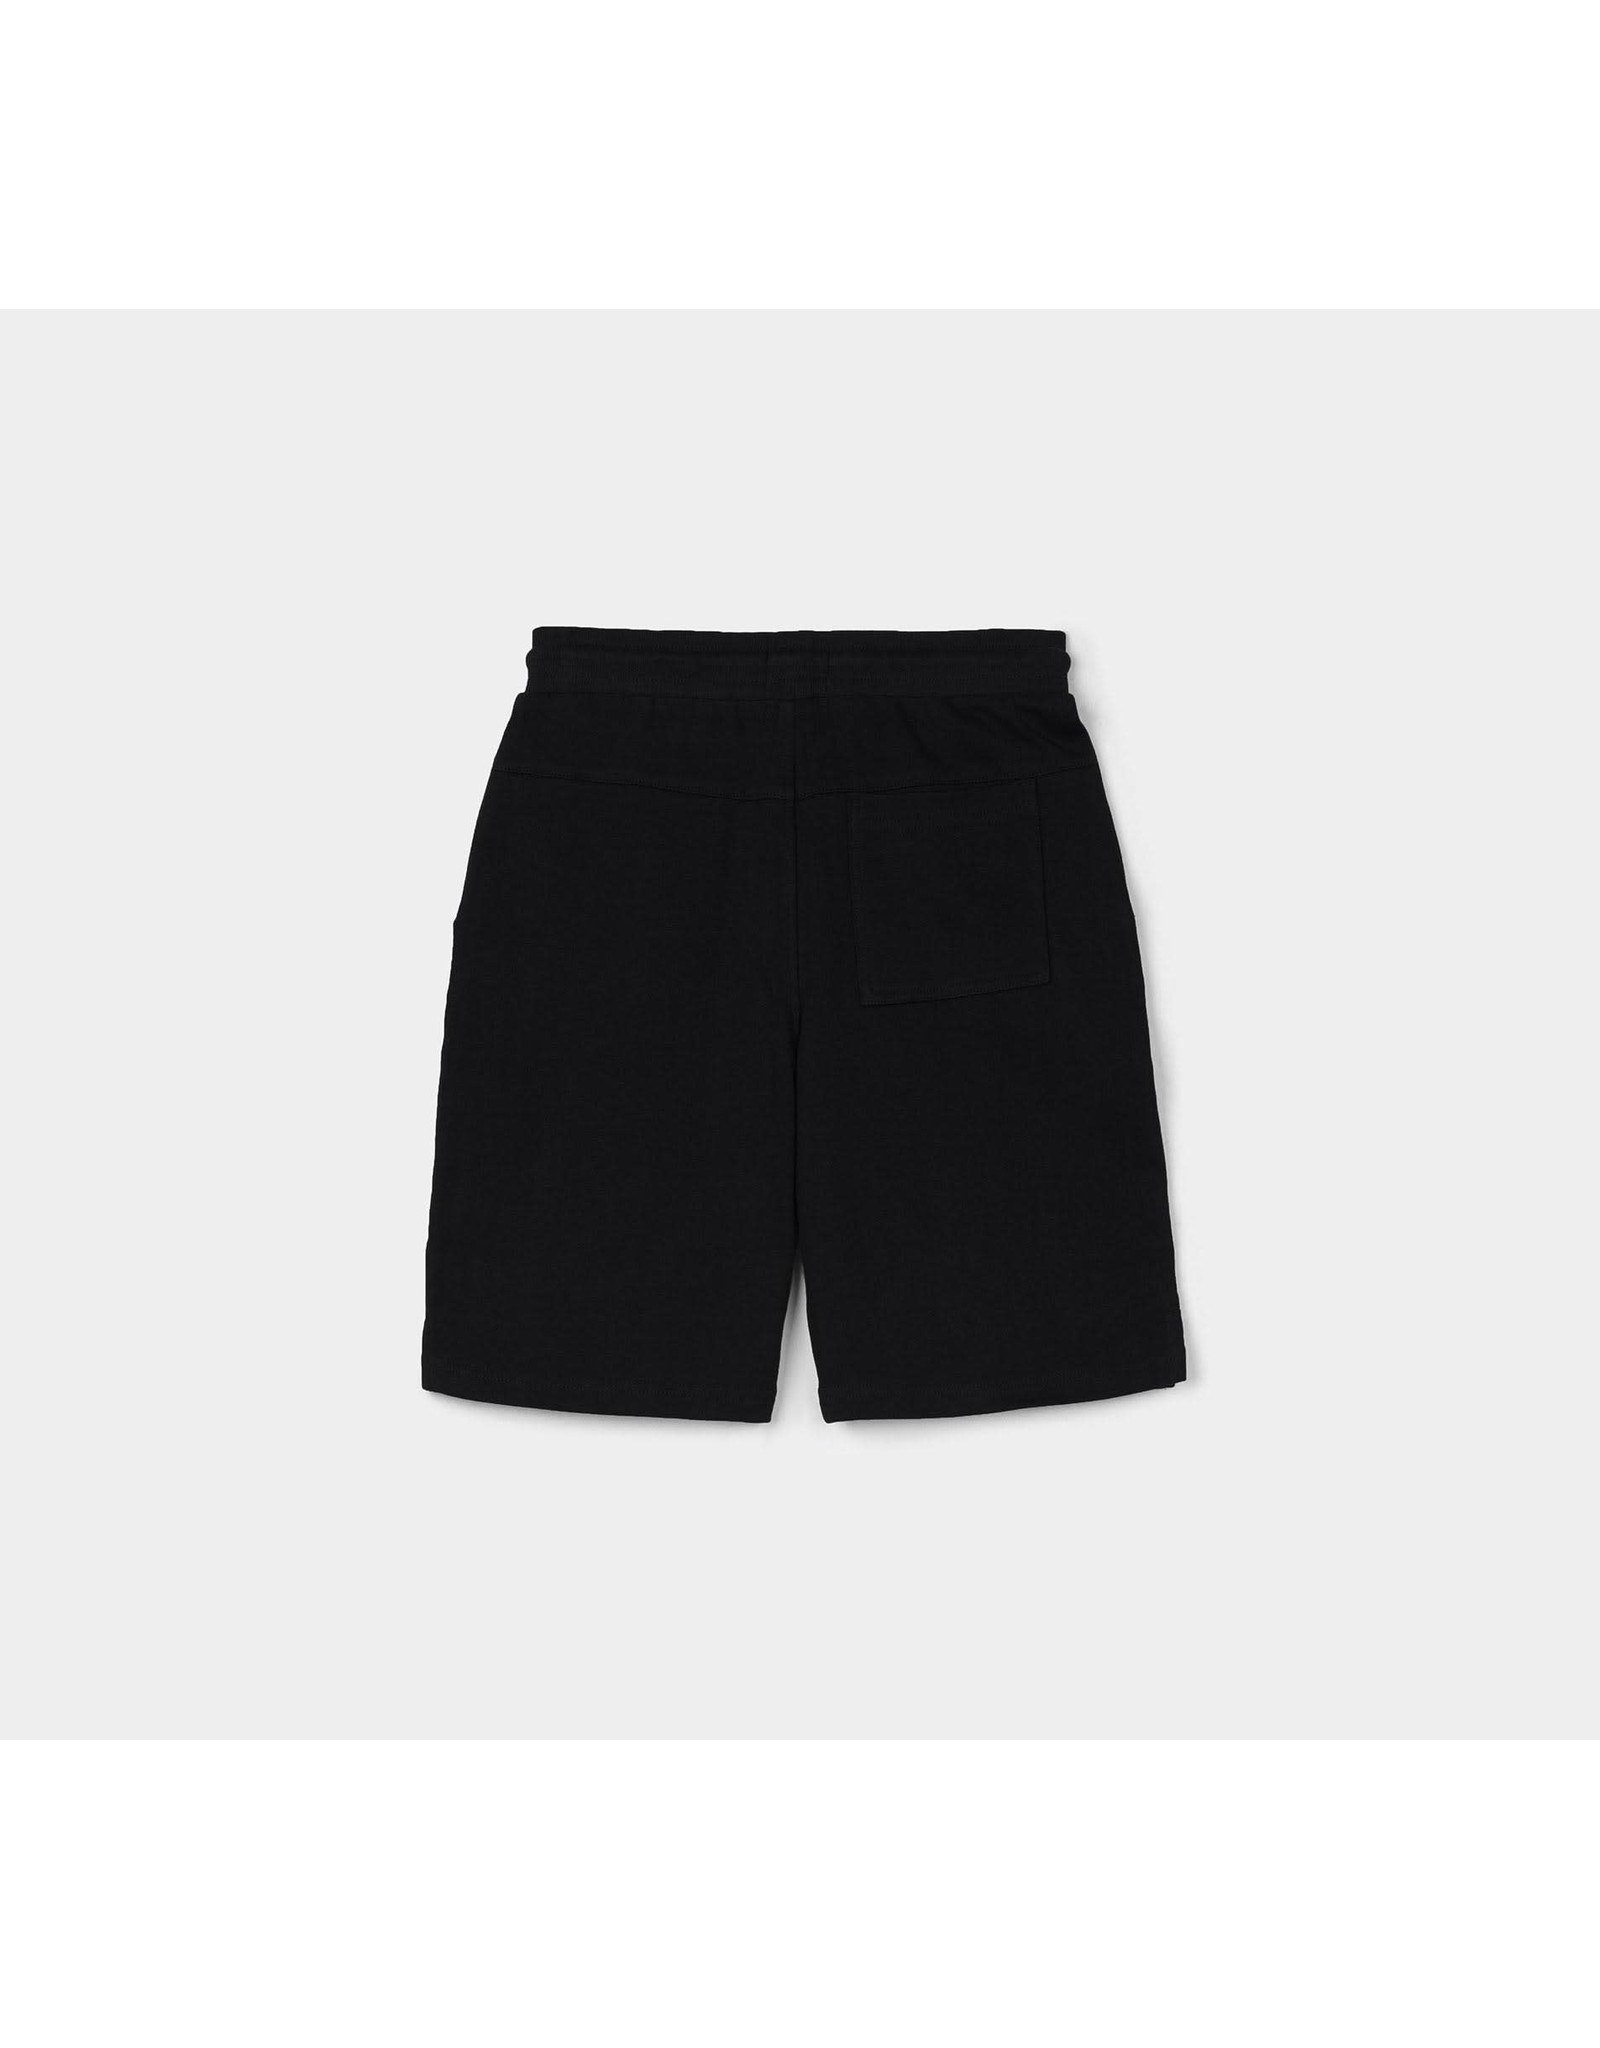 Tiffosi Fleece Shorts_K1 000 Black boys